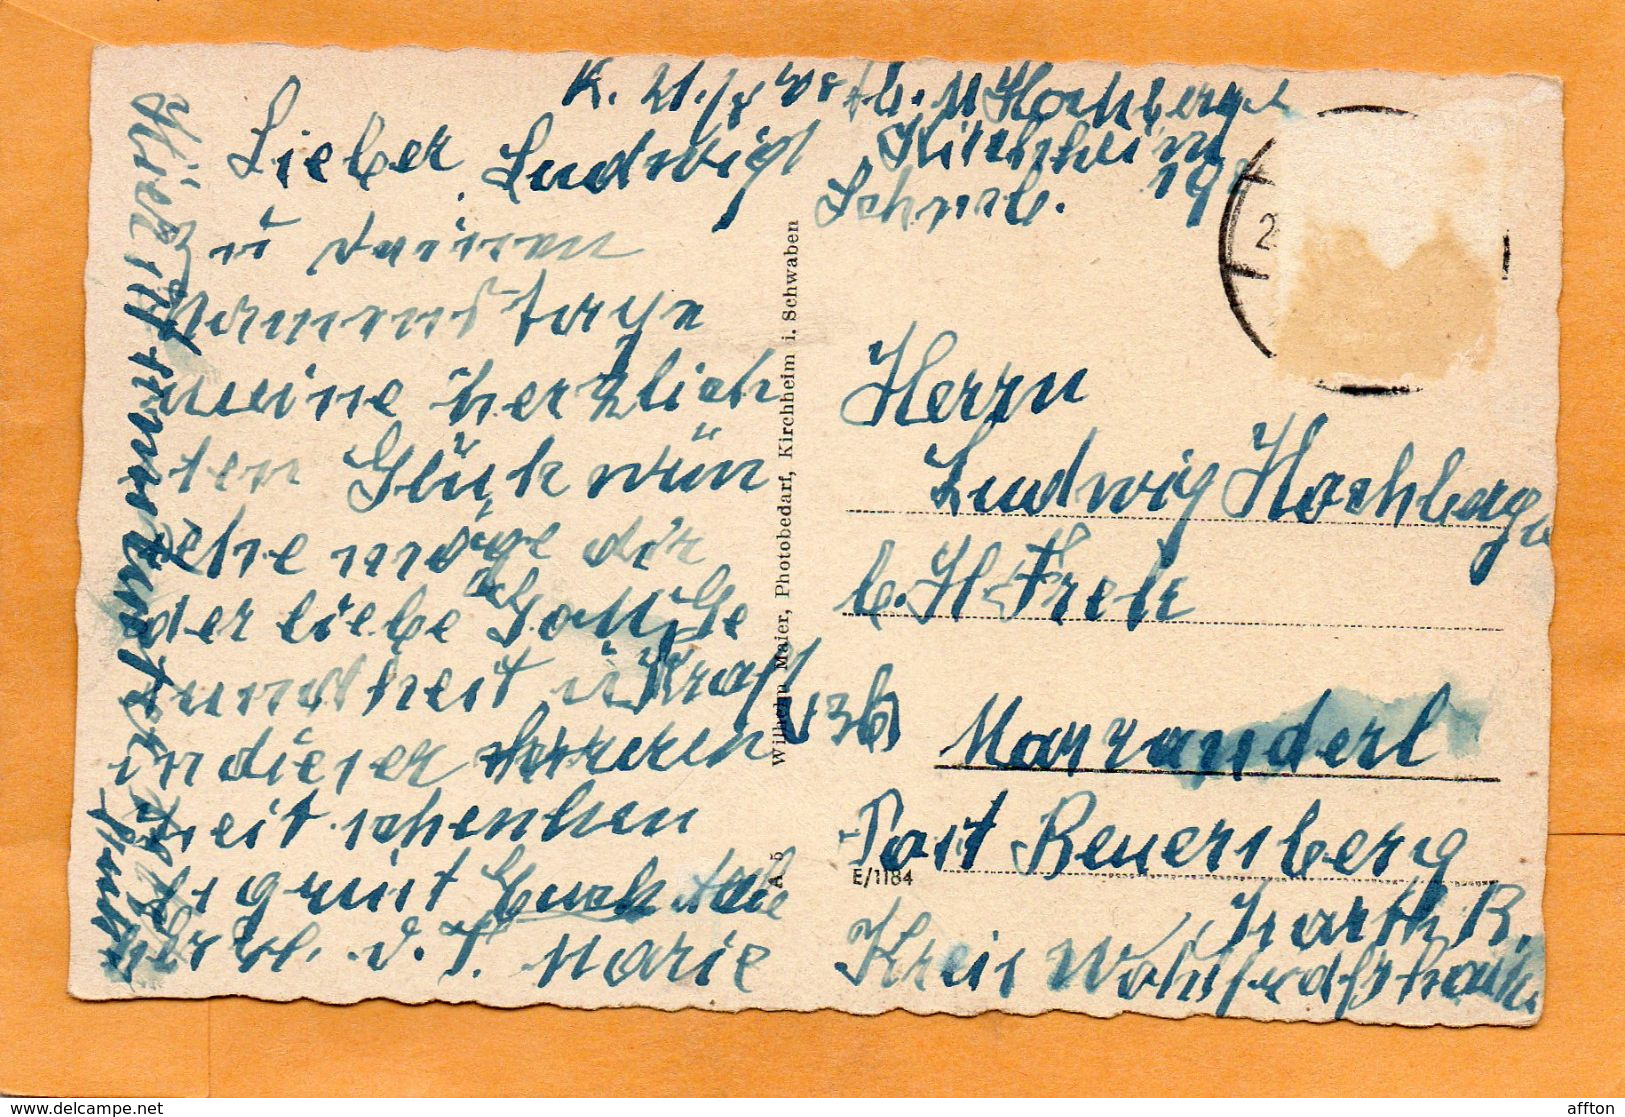 Kirchheim Unter Teck Germany 1940 Postcard - Kirchheim